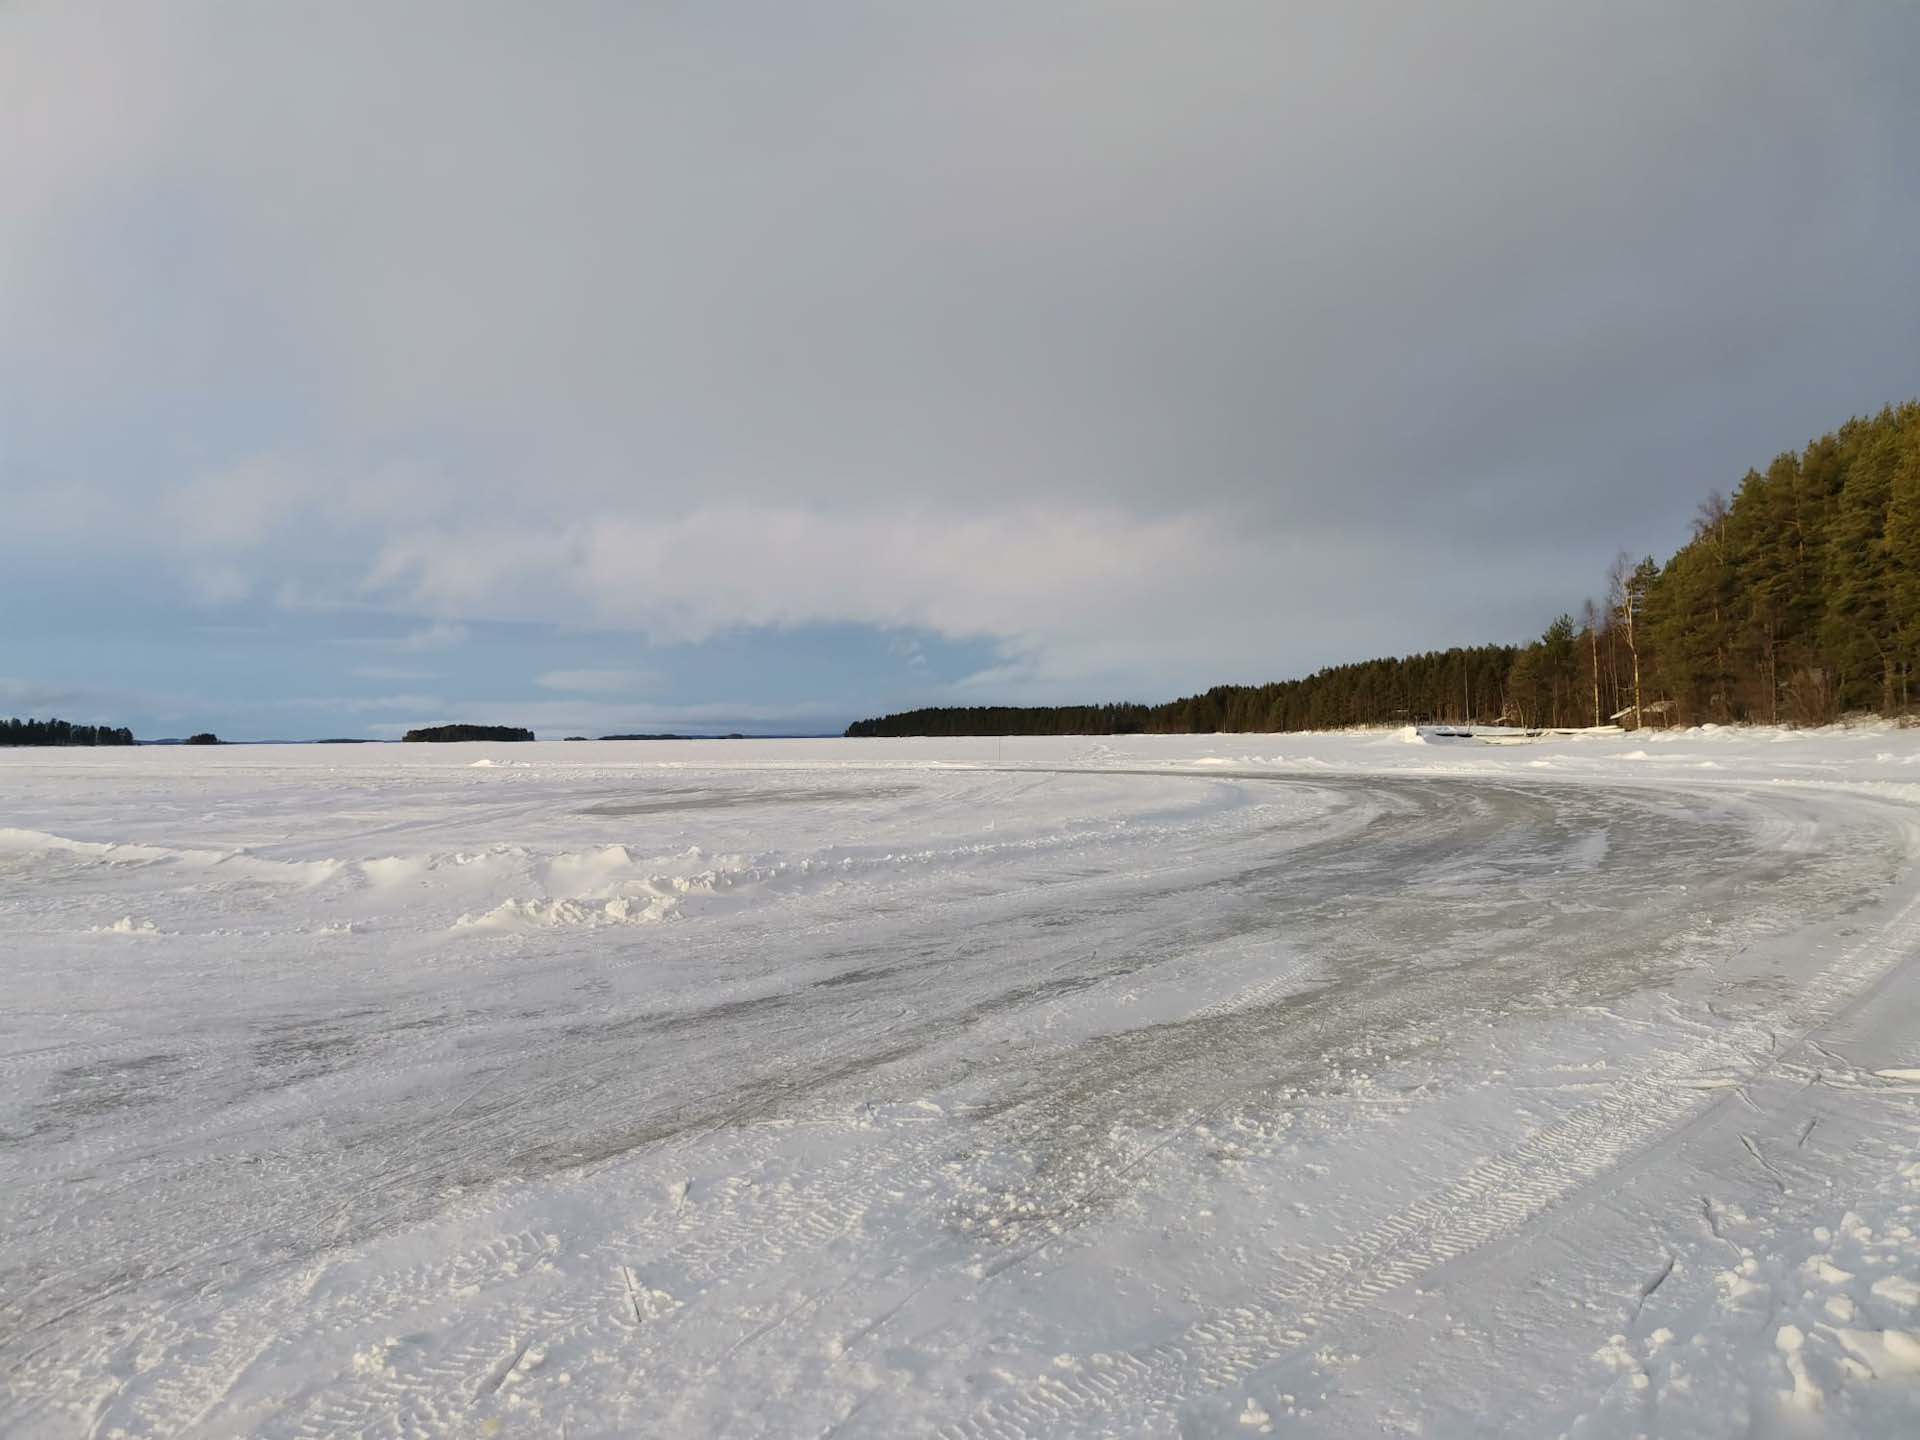 Järven jää rannalta kuvattuna. Jäätien alku, vasemmalla rannan metsää. Kauaempana saaria.